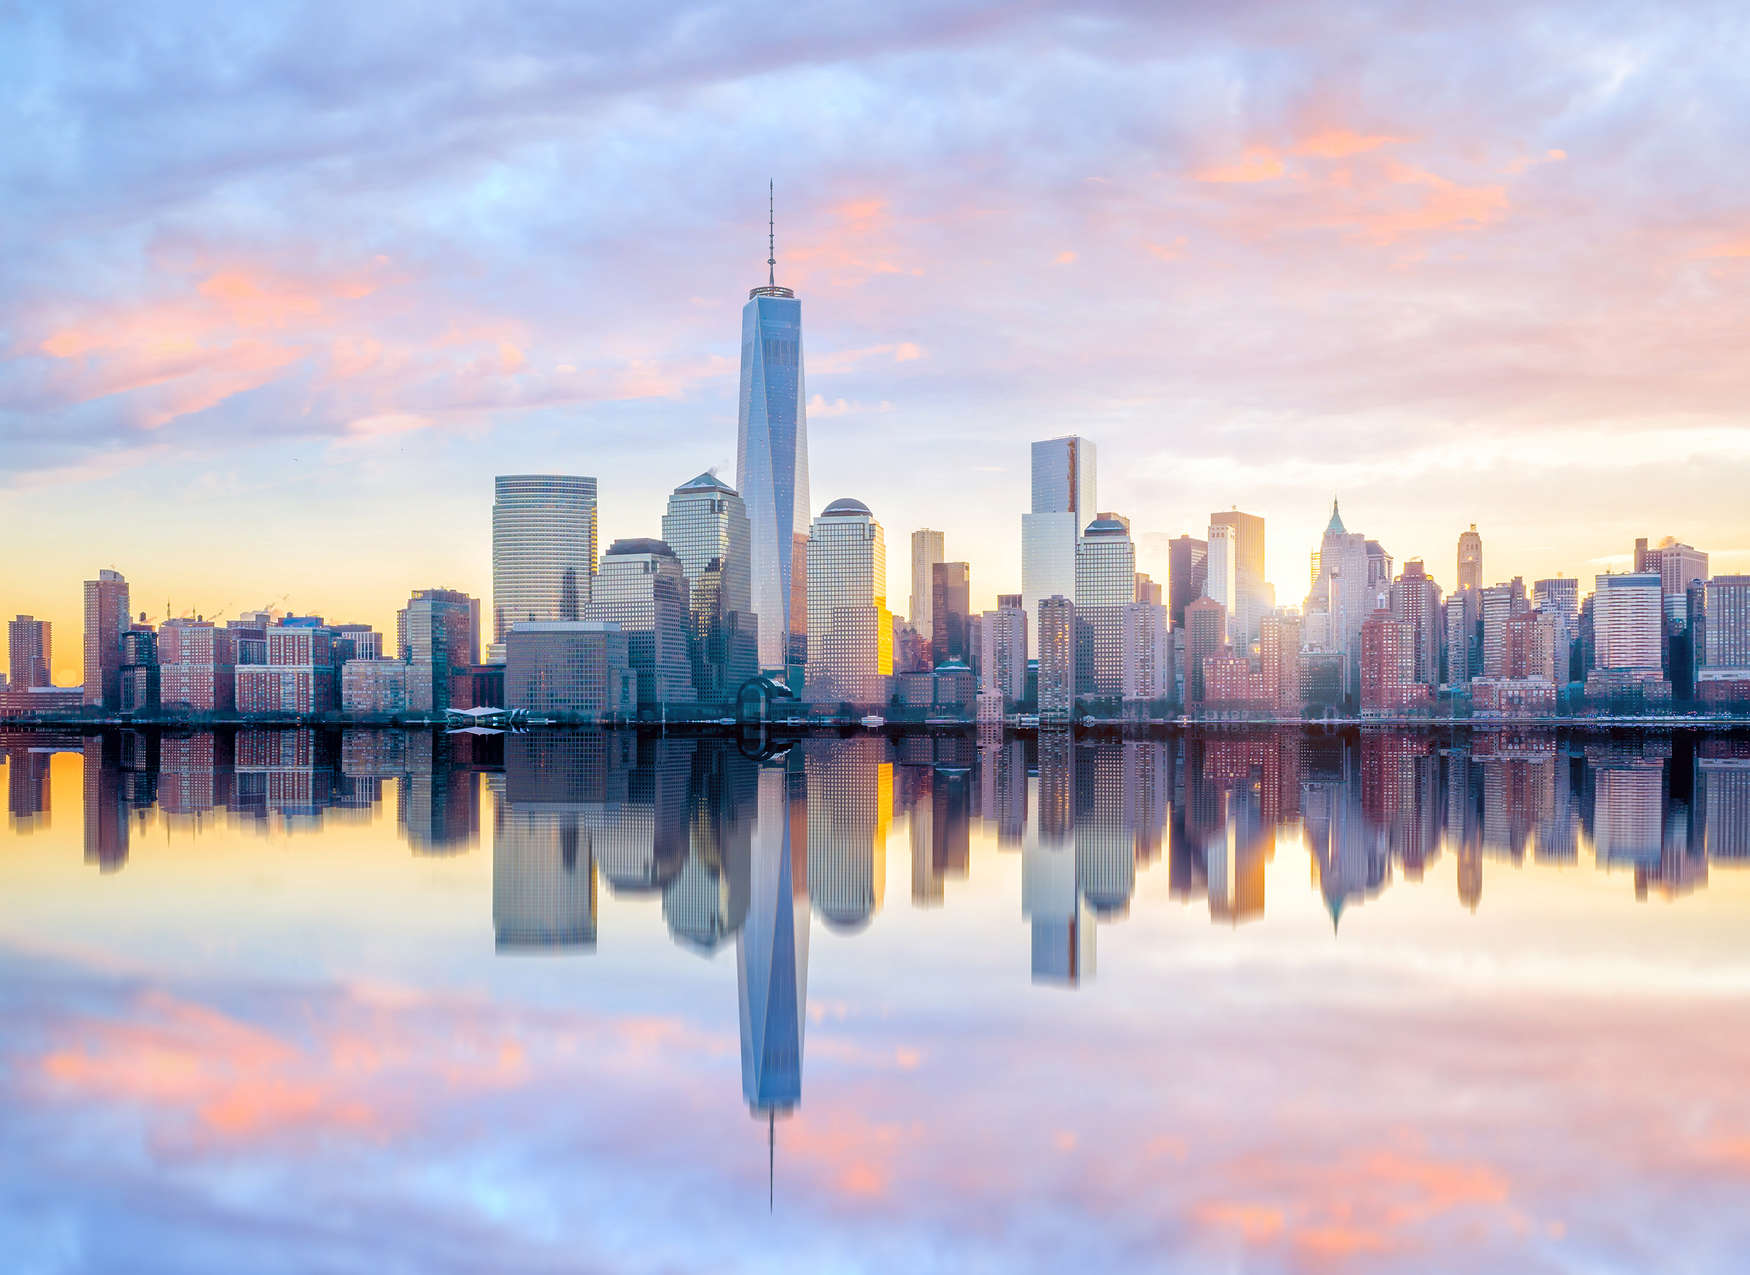             Digital behang New York Skyline in de ochtend - Blauw, grijs, geel
        